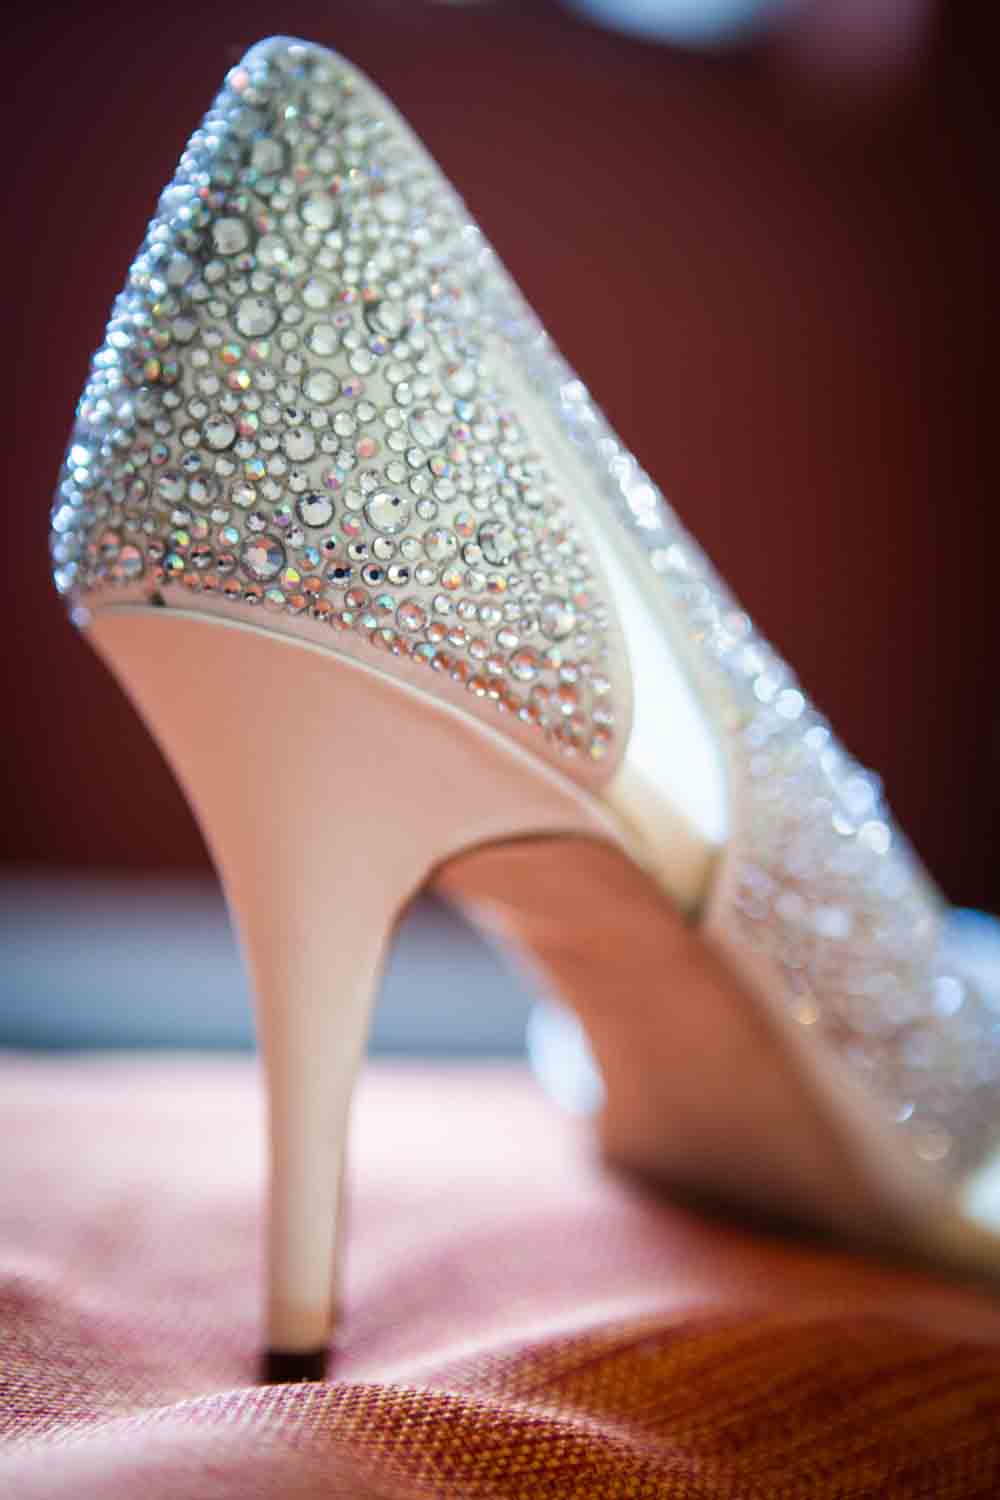 Heel of shoe encrusted with diamond-like sequins